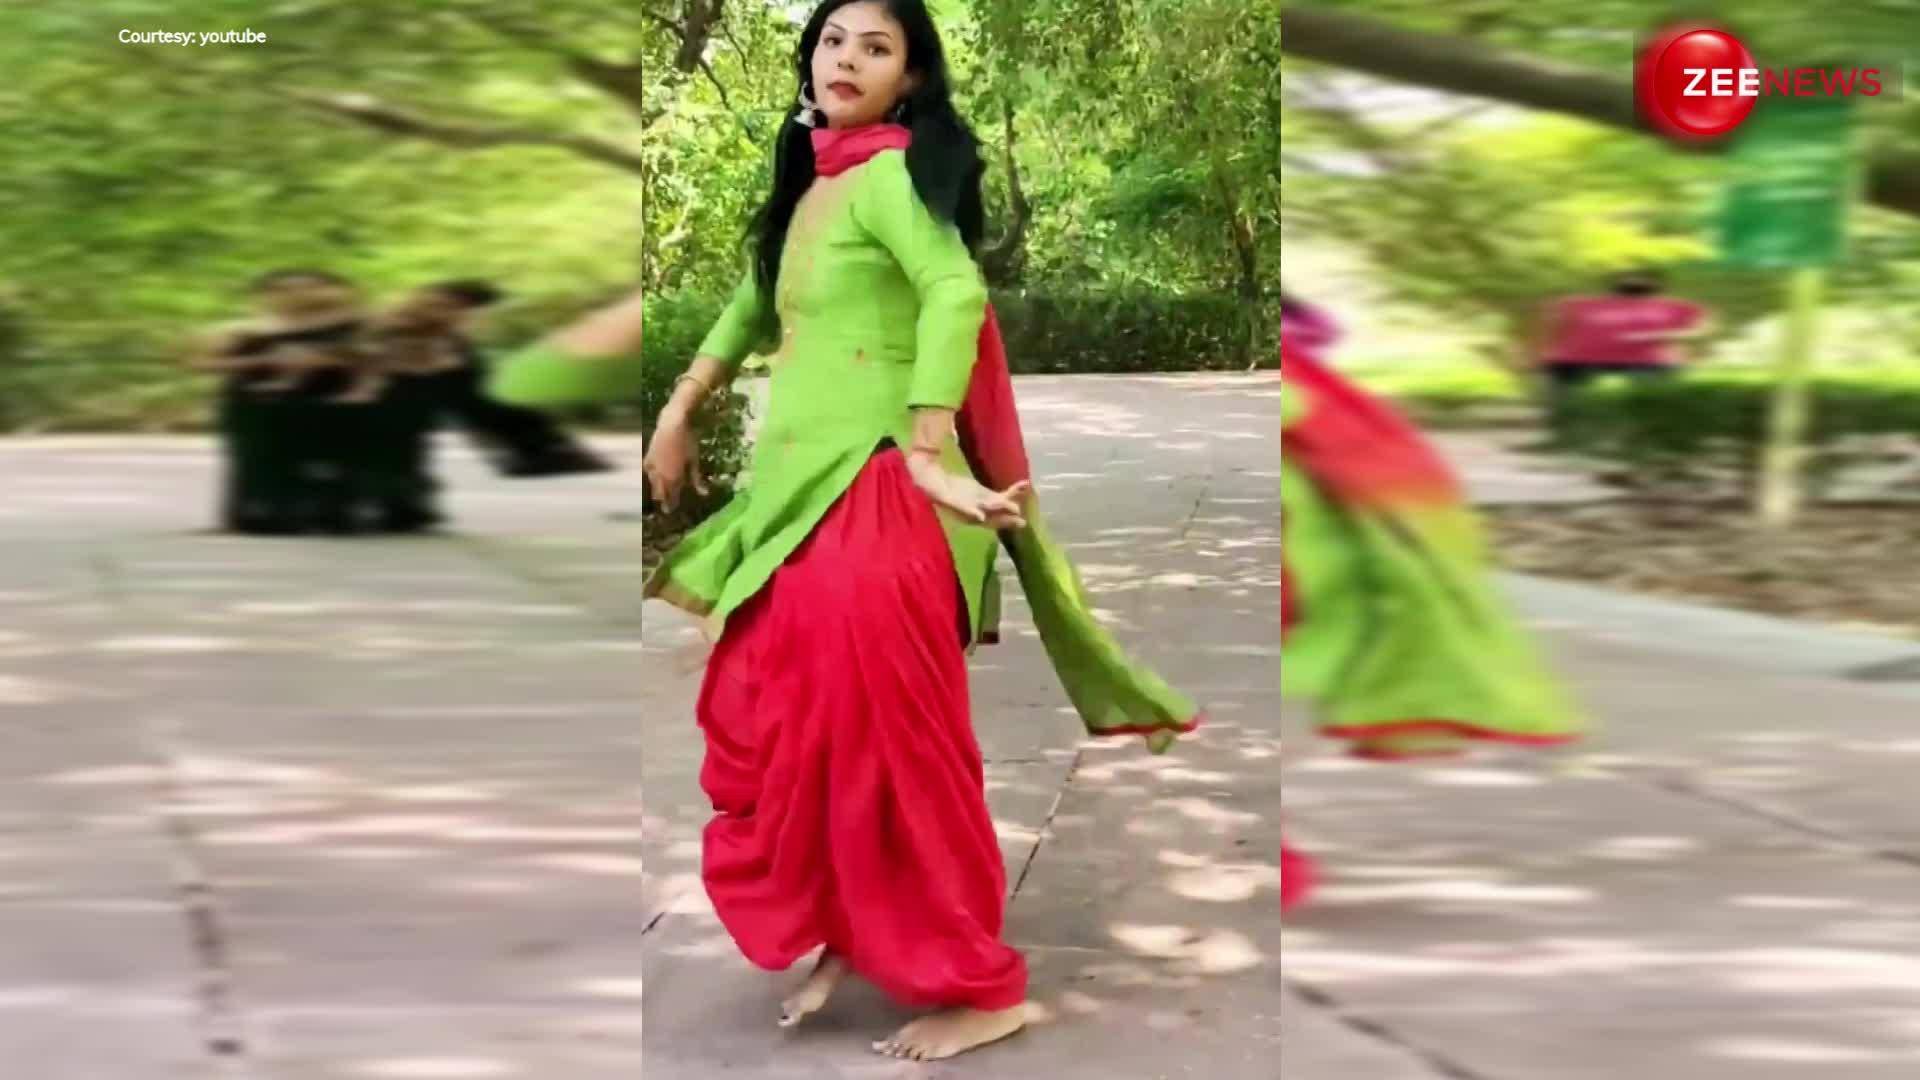 Desi Girl dance: पार्क में लड़की को डांस करते देख पड़ोस वाली आंटी ने की मम्मी से शिकायत...फिर हुआ कुछ ऐसा देख फटी रह गई सबकी आंखें